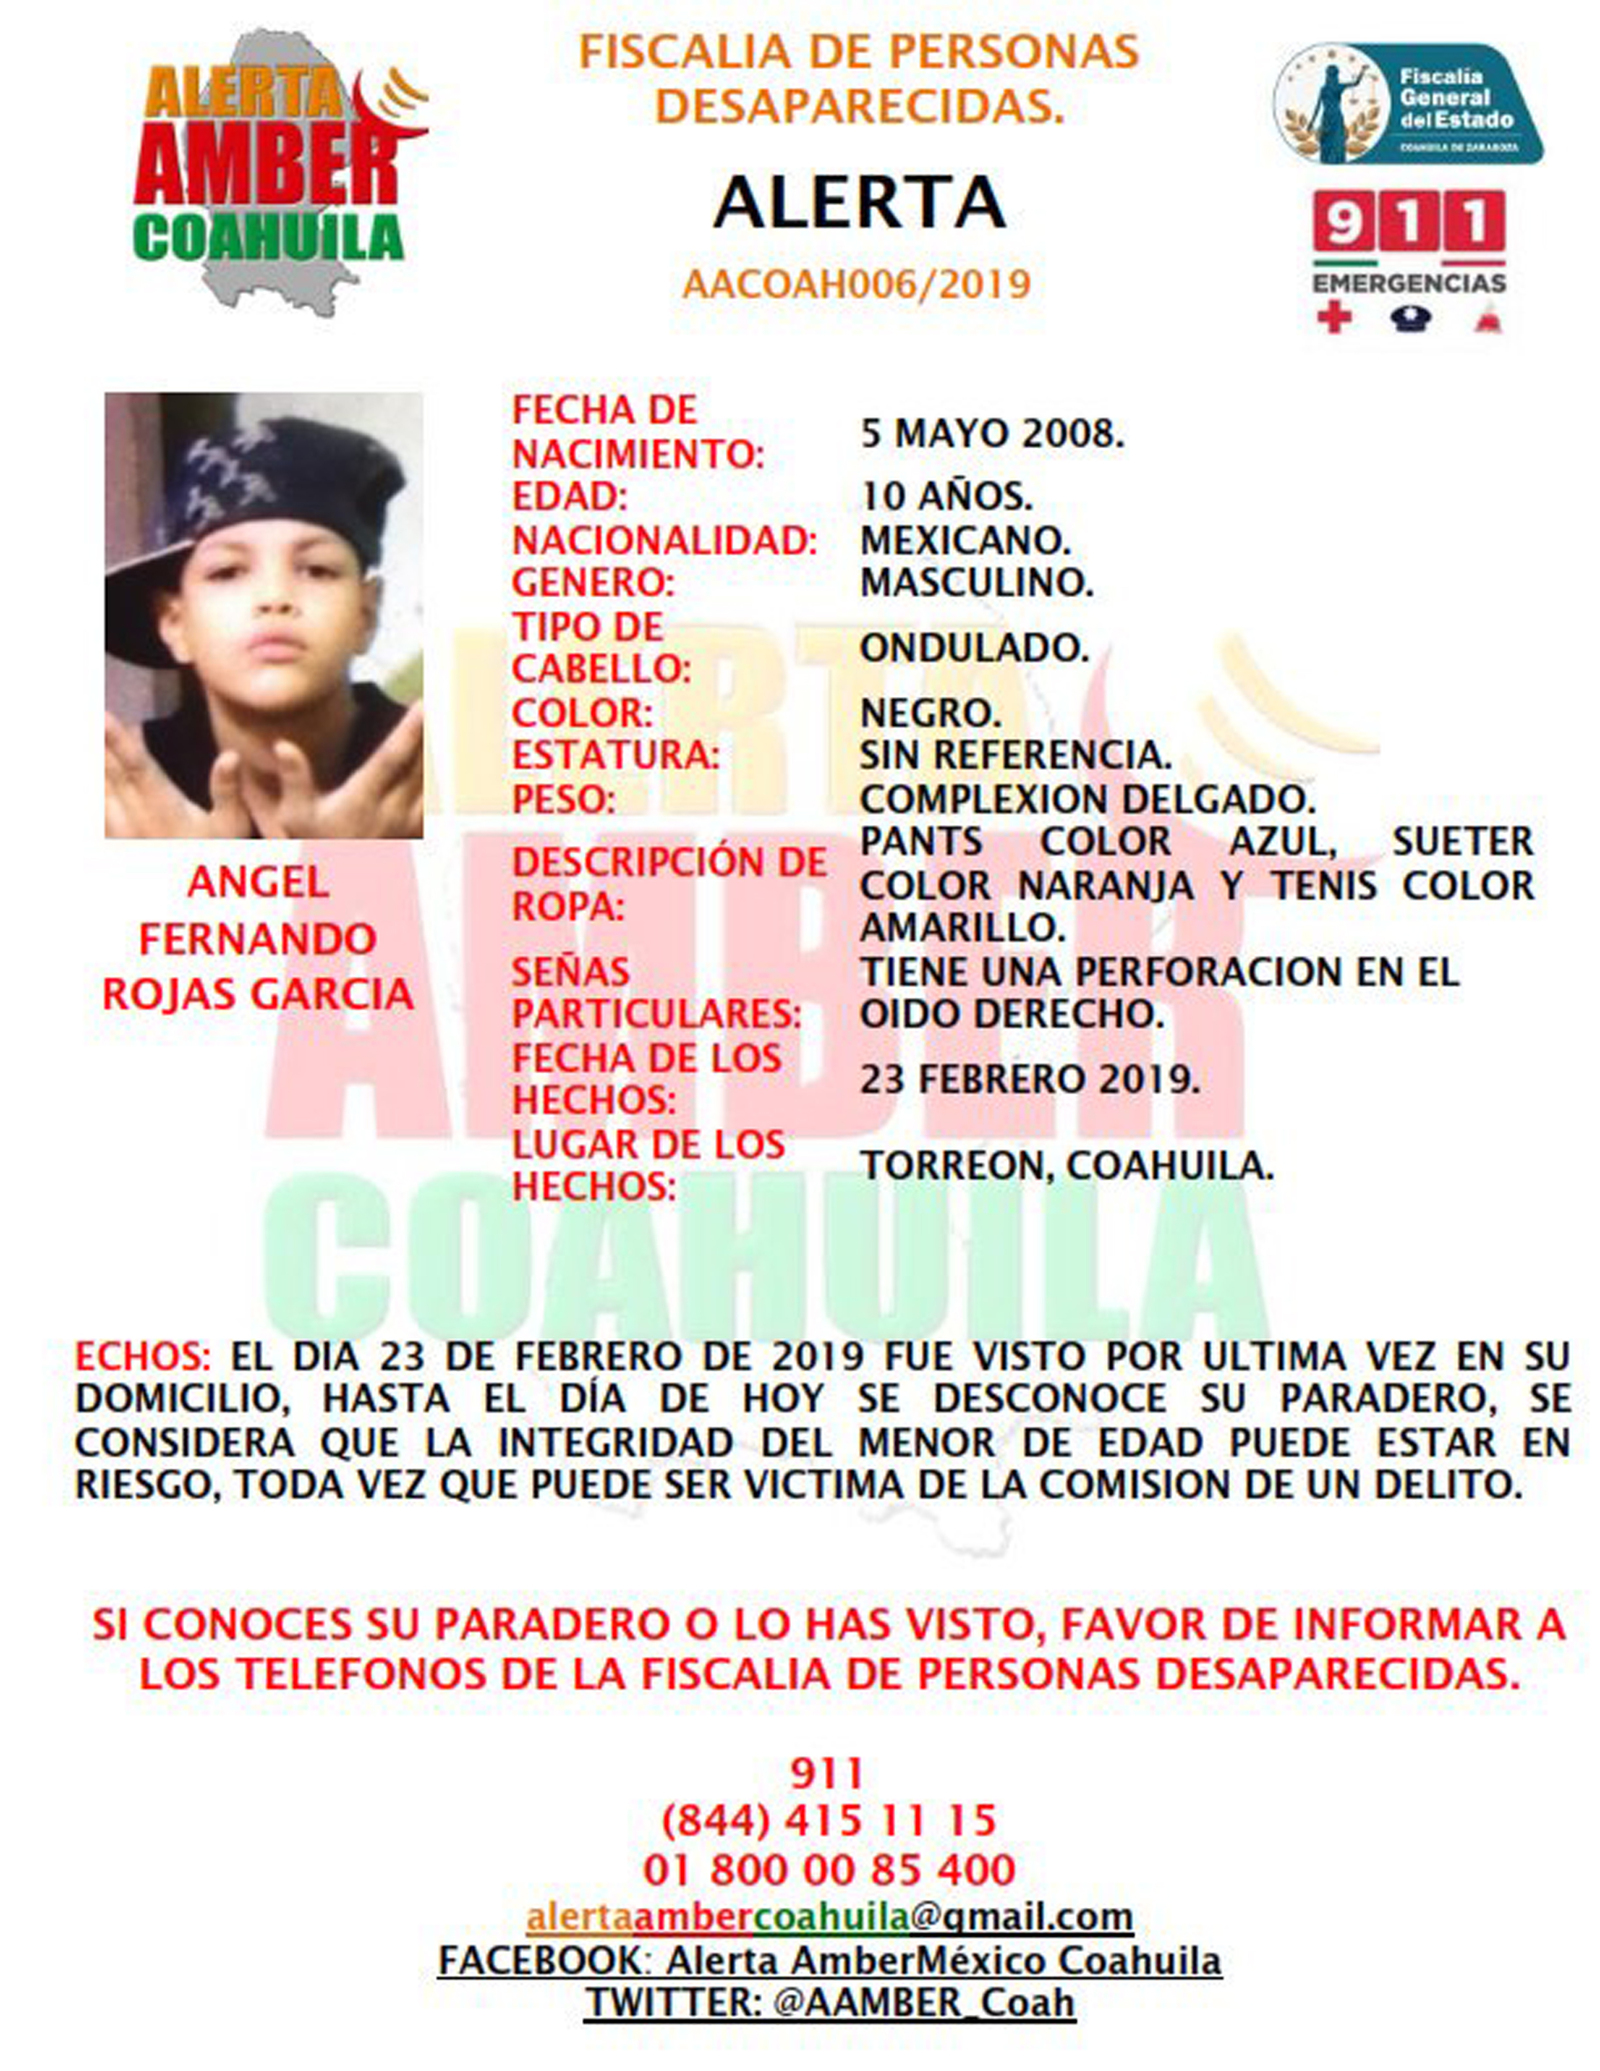 El niño tiene 10 años de edad, su nombre es Ángel Fernando Rojas García y fue visto por última vez el día 23 de febrero.